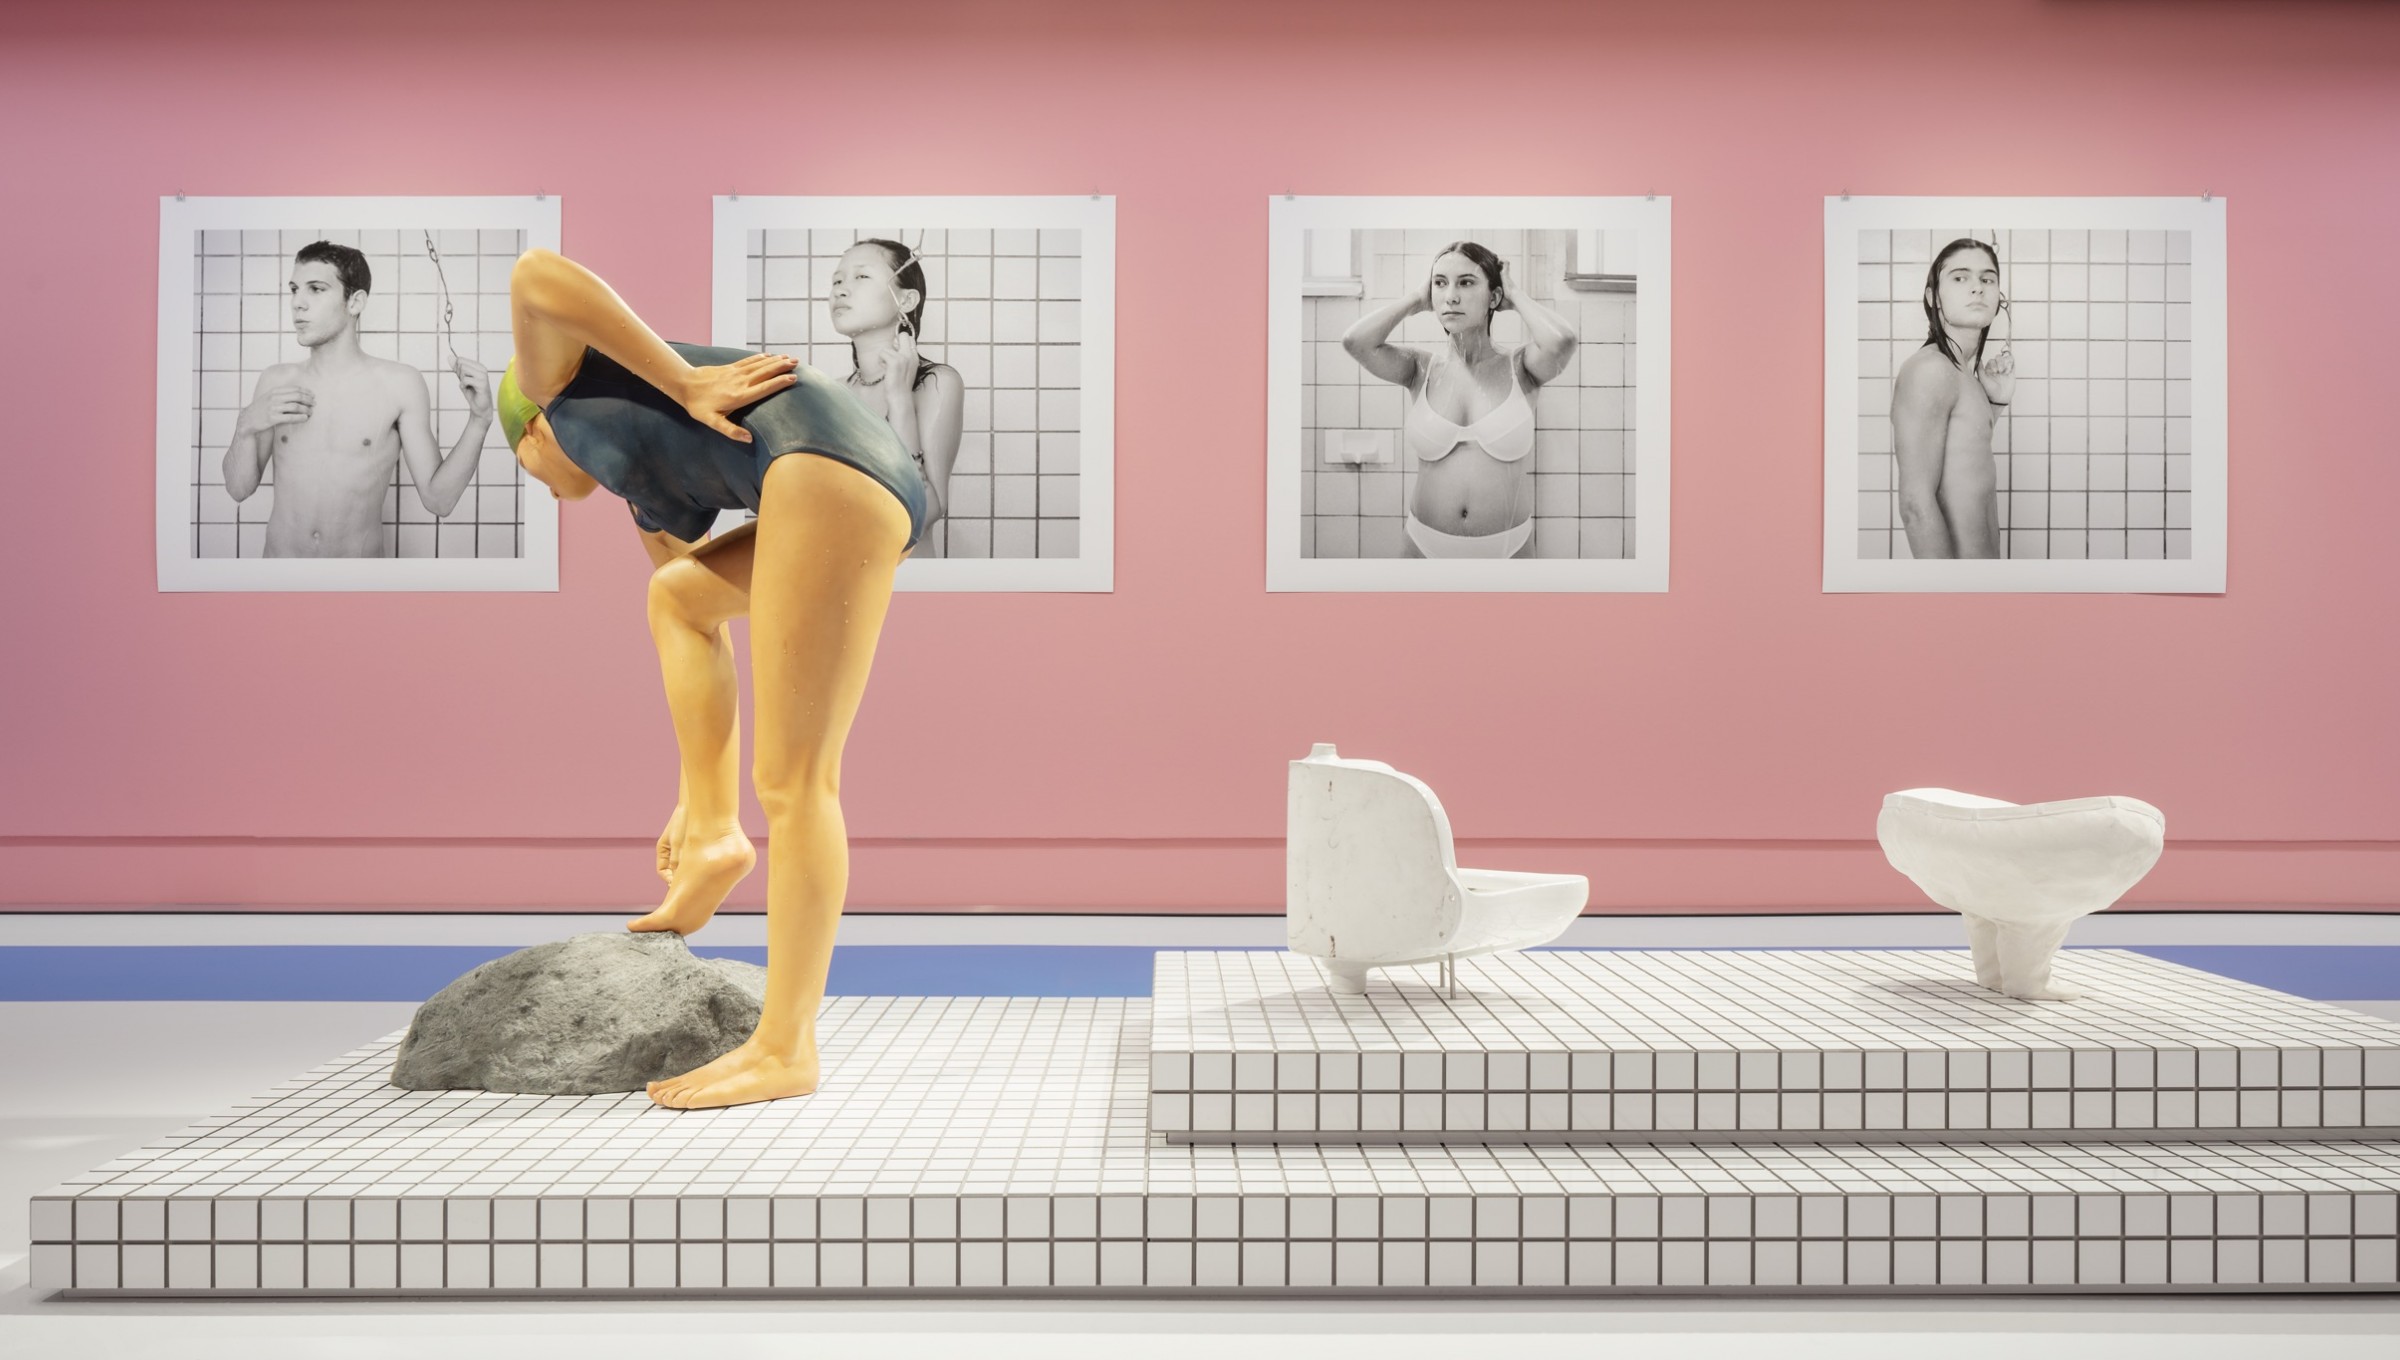 thegreeneyl exhibition design ausstellungsdesign schloss wilhelmshöhe mit allen wassern gewaschen pool raum pink